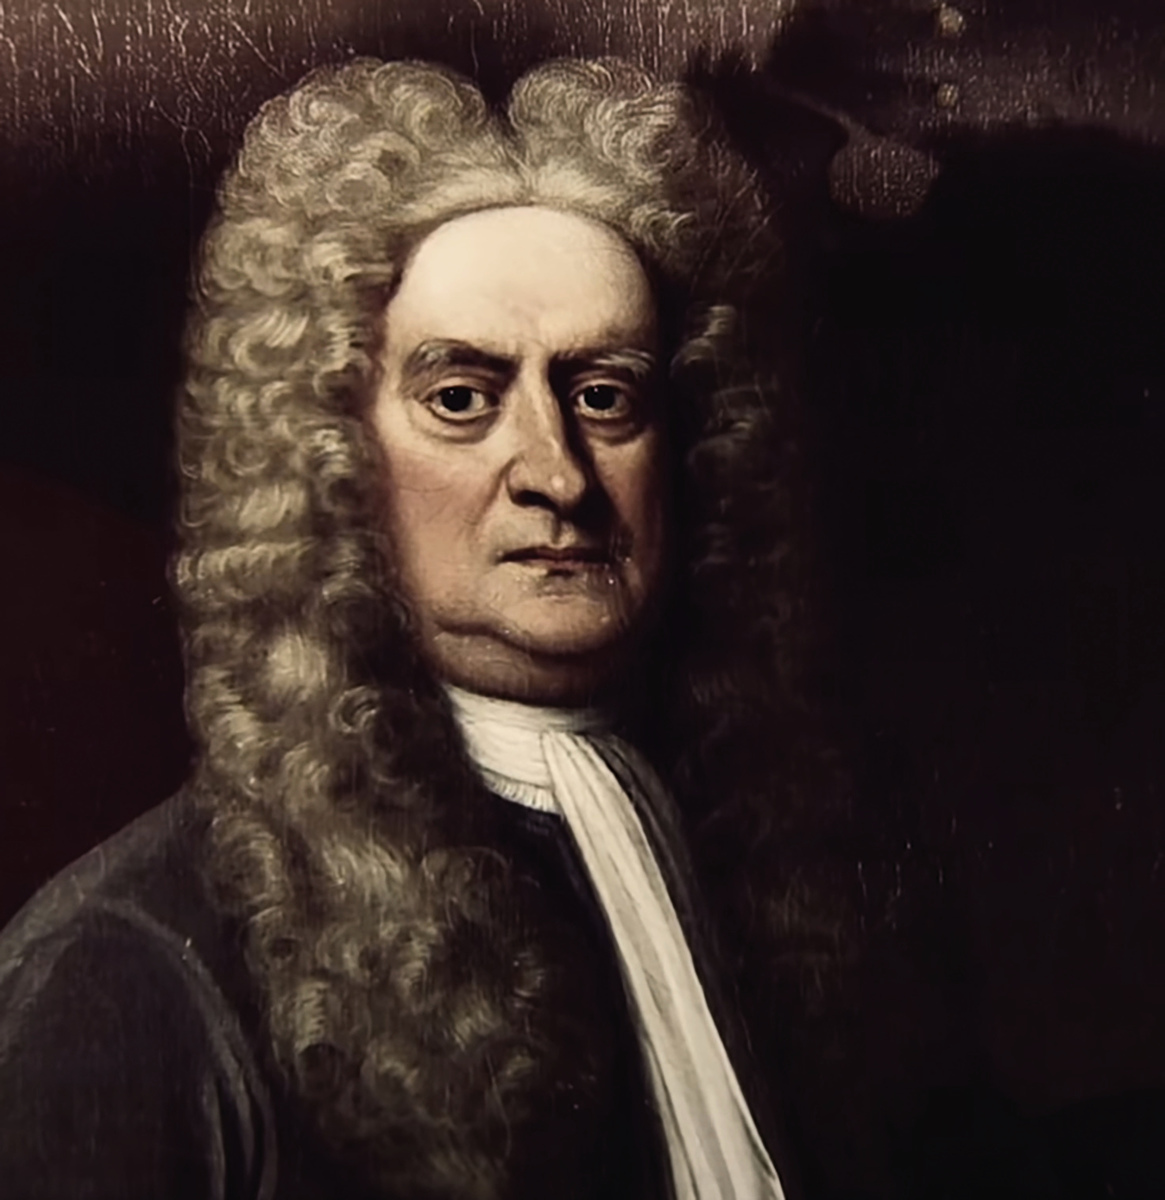 現代科學之父牛頓是一位虔誠信神的人，相信整個完美的宇宙是偉大造物主的傑作。（未解之謎影片截圖）